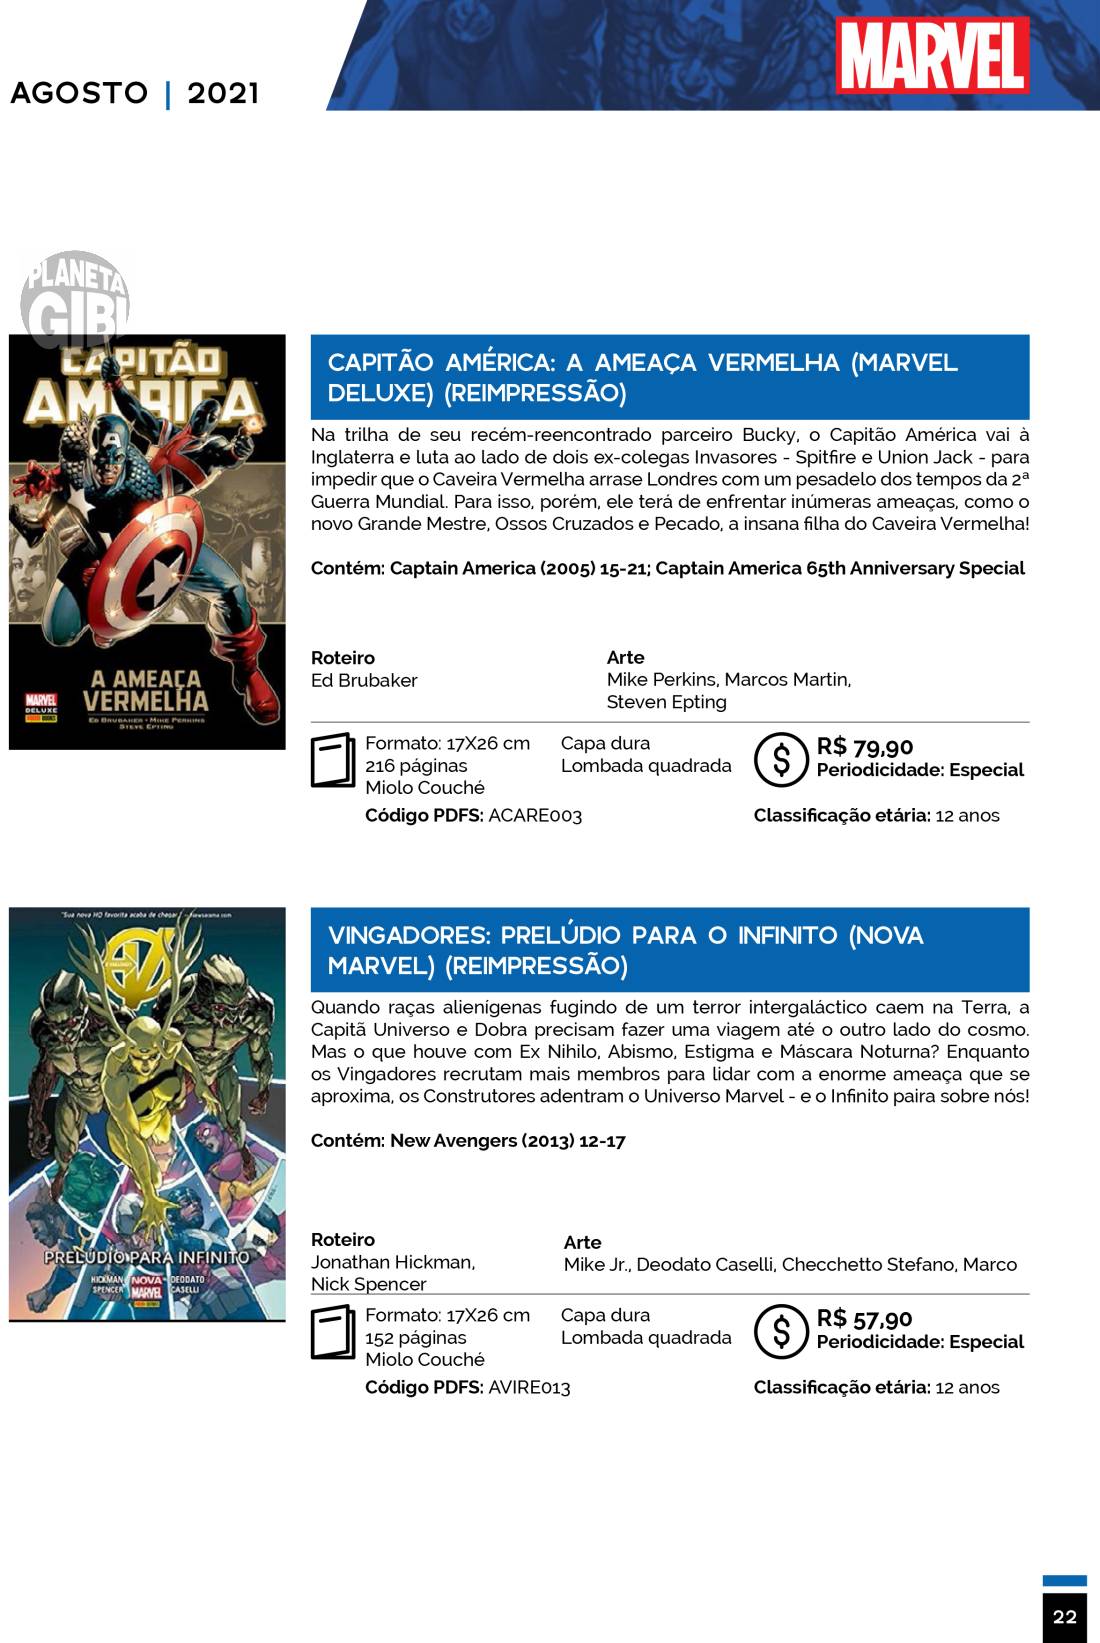 11 - Checklist Marvel/Panini (Julho/2020 - pág.09) - Página 9 Catalogo-Julho-Agosto-22